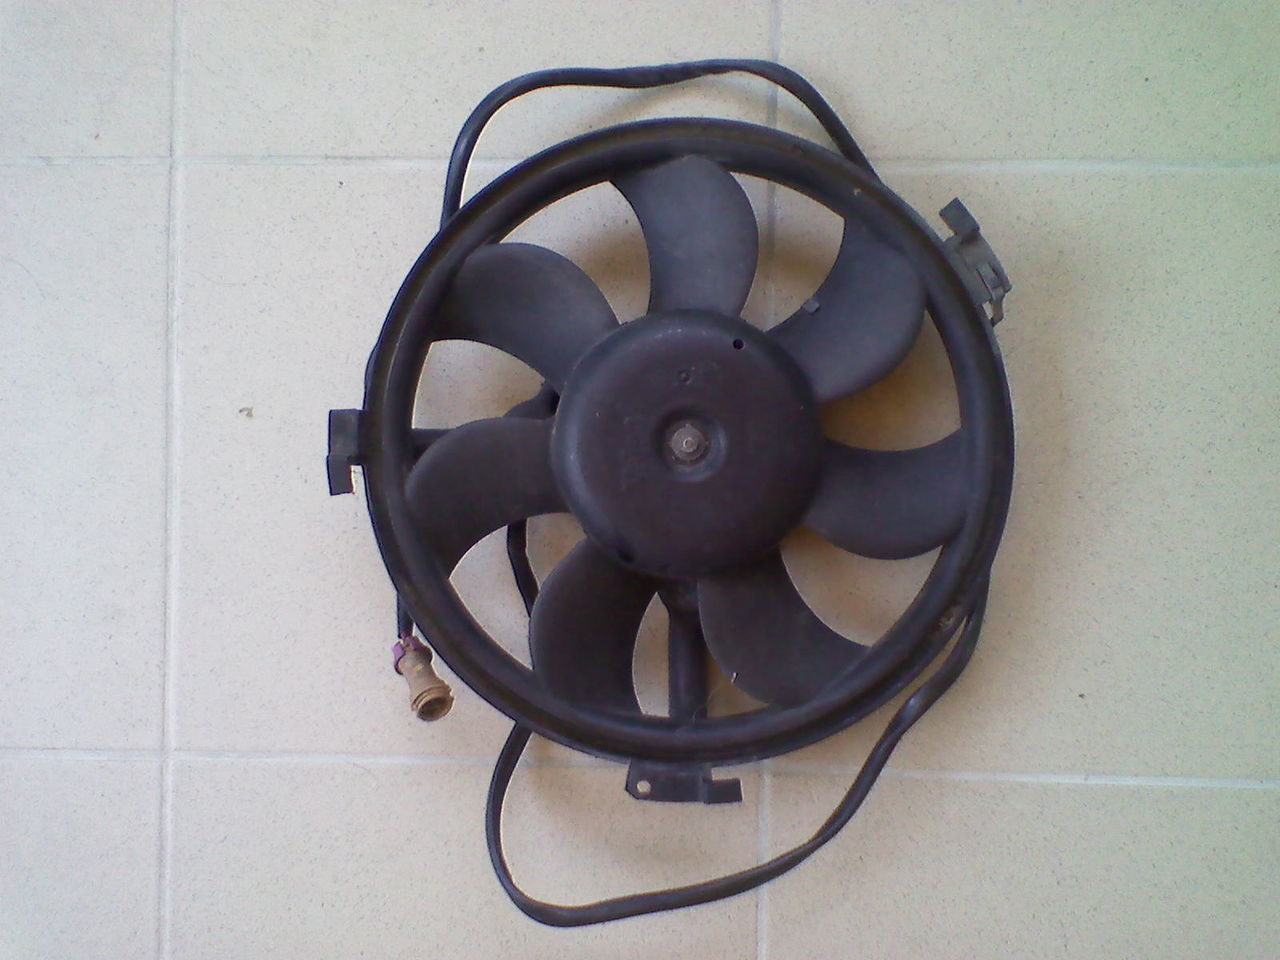 Вентилятор кондиционера в рабочем состоянии на 12 вольт. Диам. 31 см .